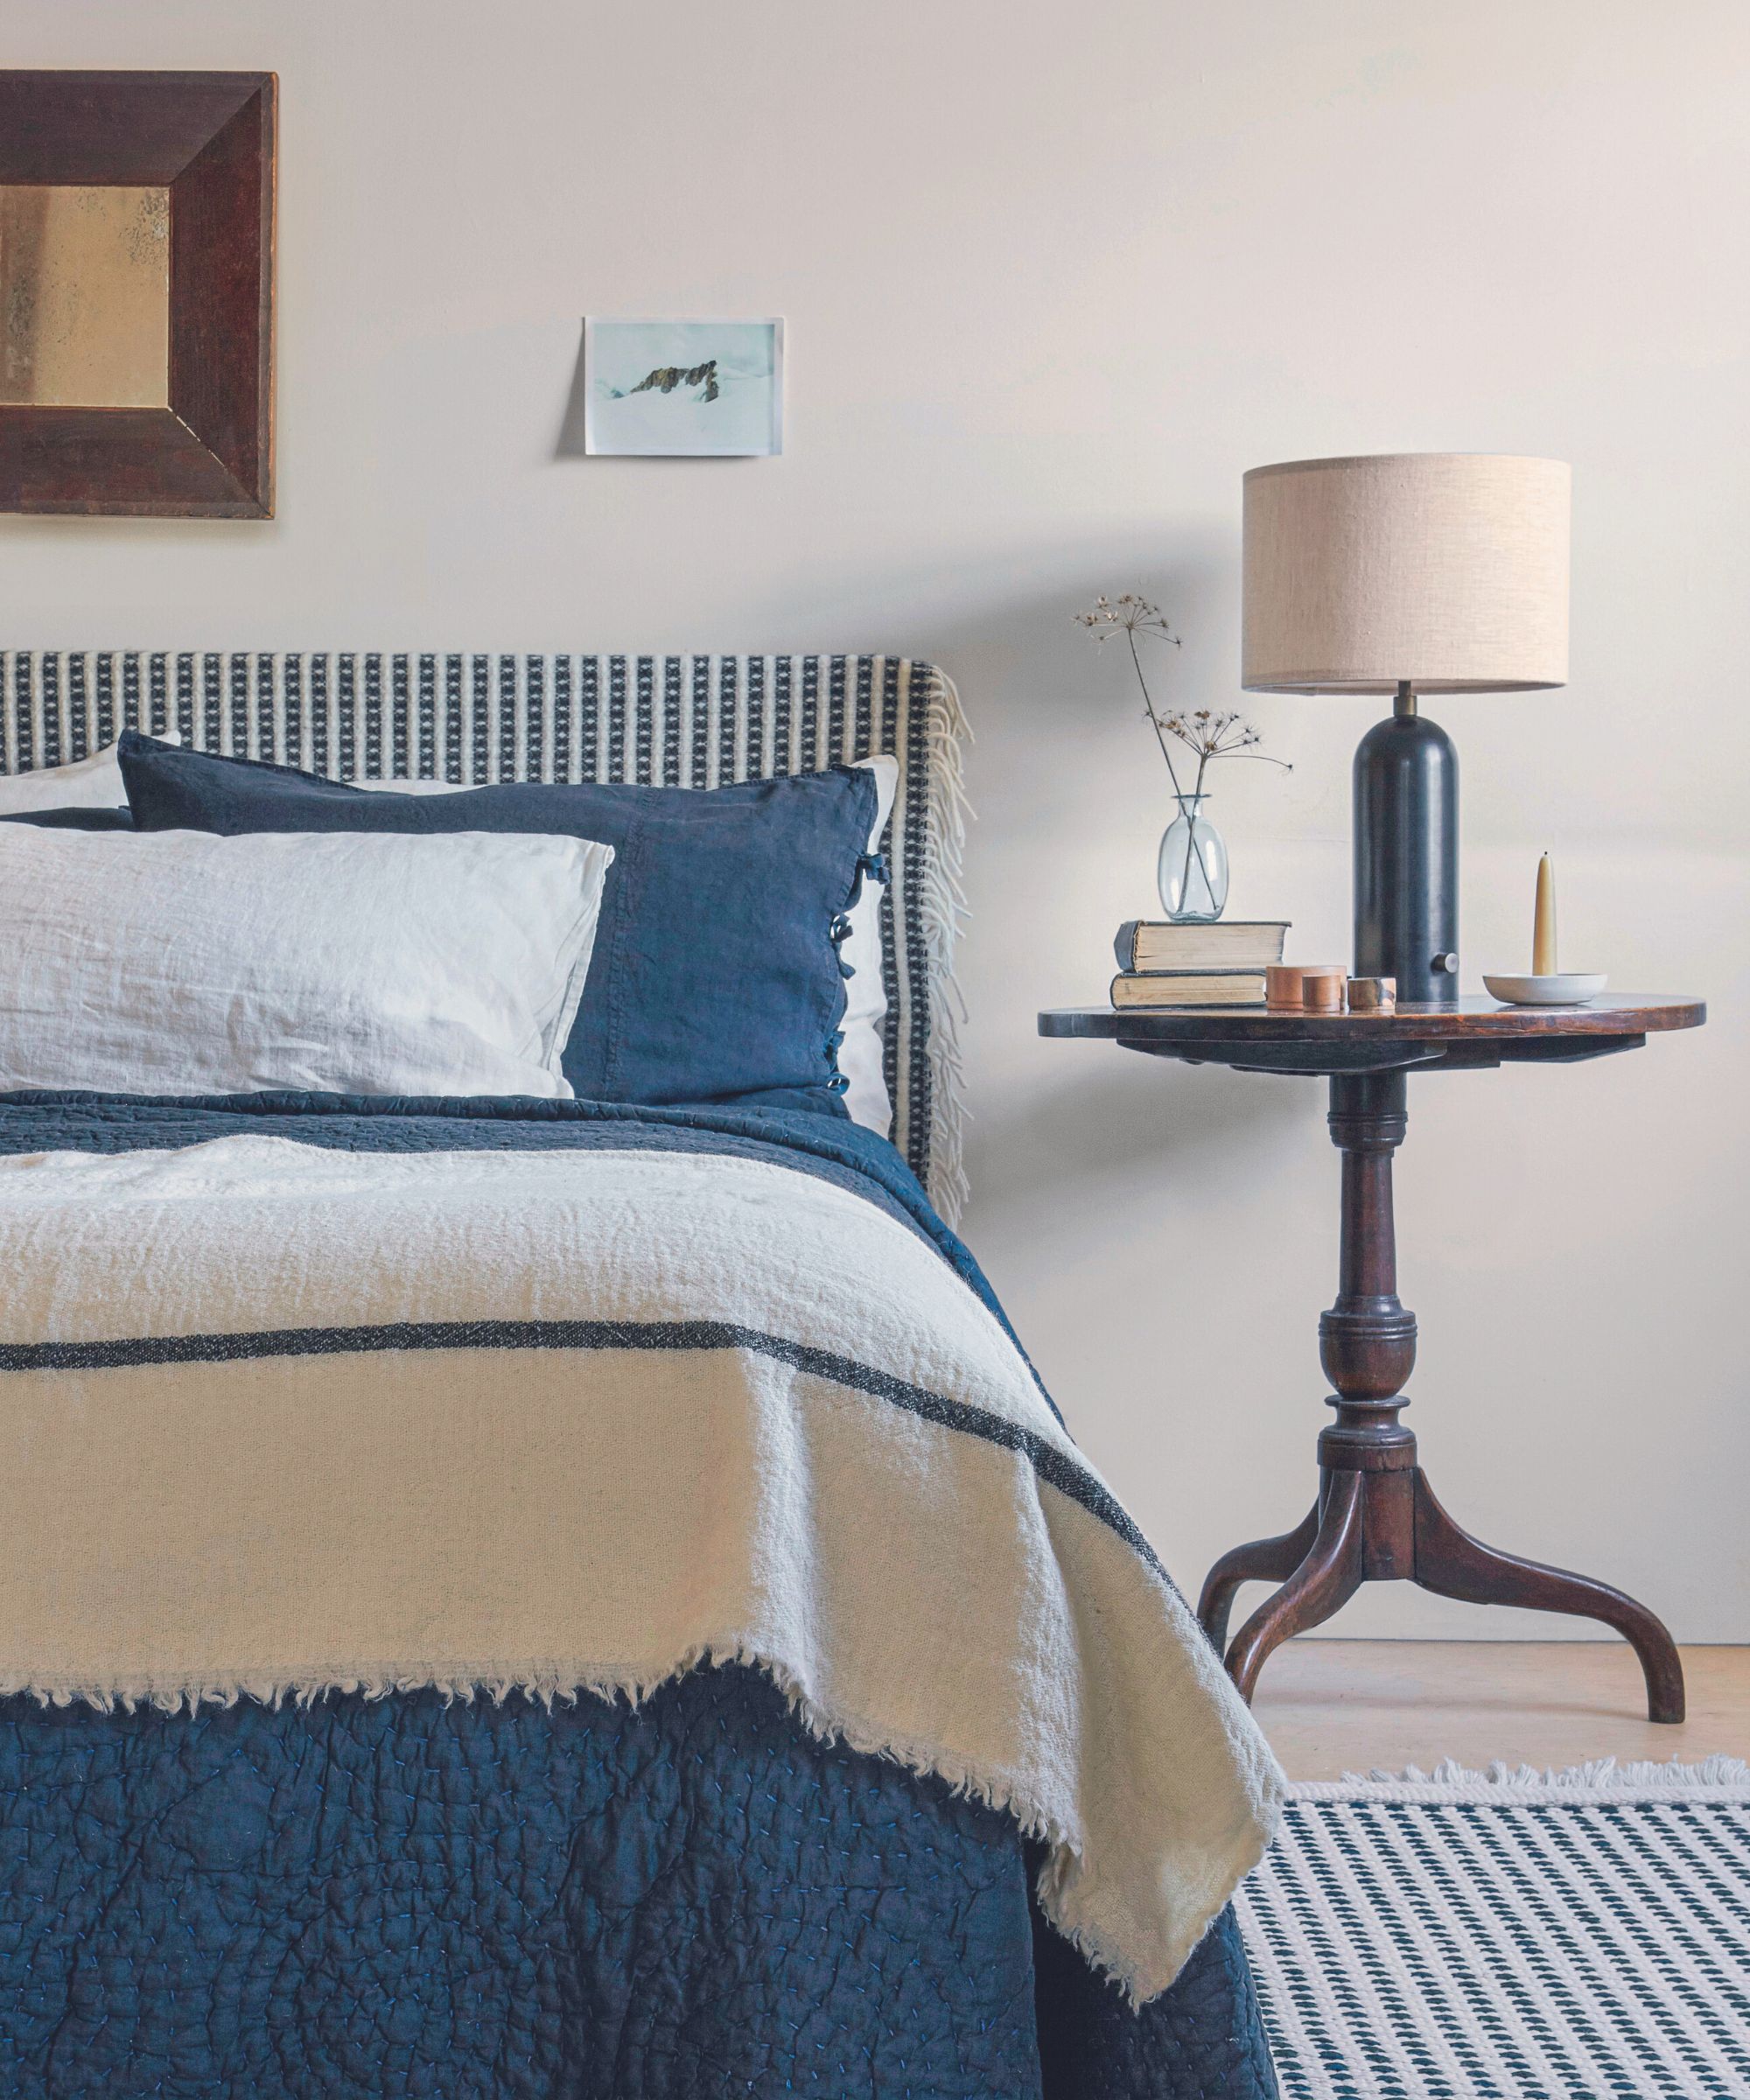 Cama doble con ropa de cama azul y crema contra una pared gris.